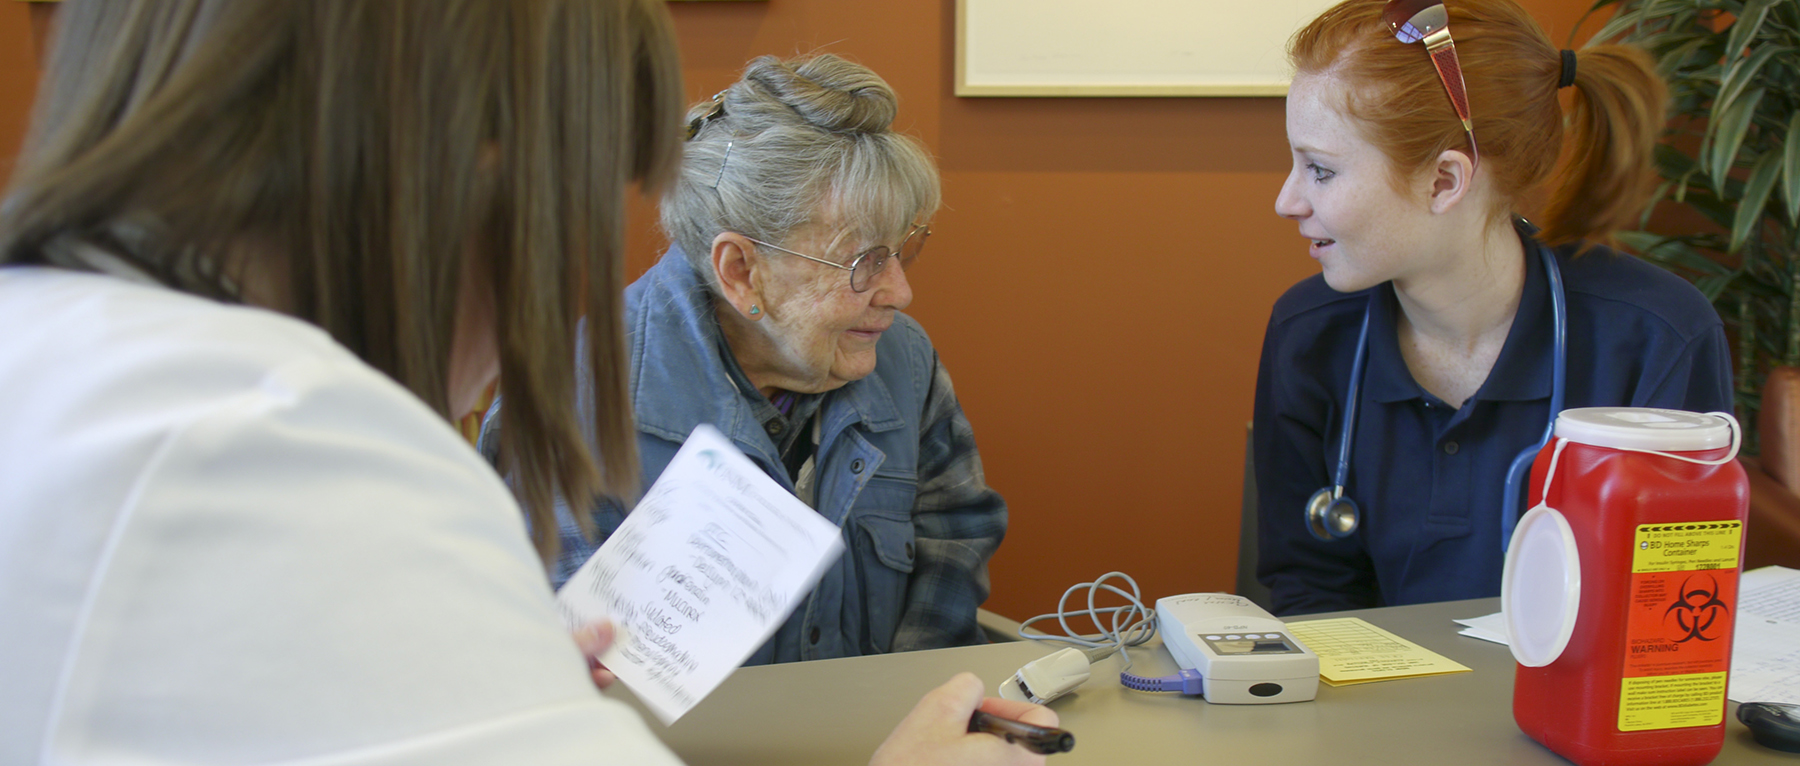 An elderly woman talking to nurses